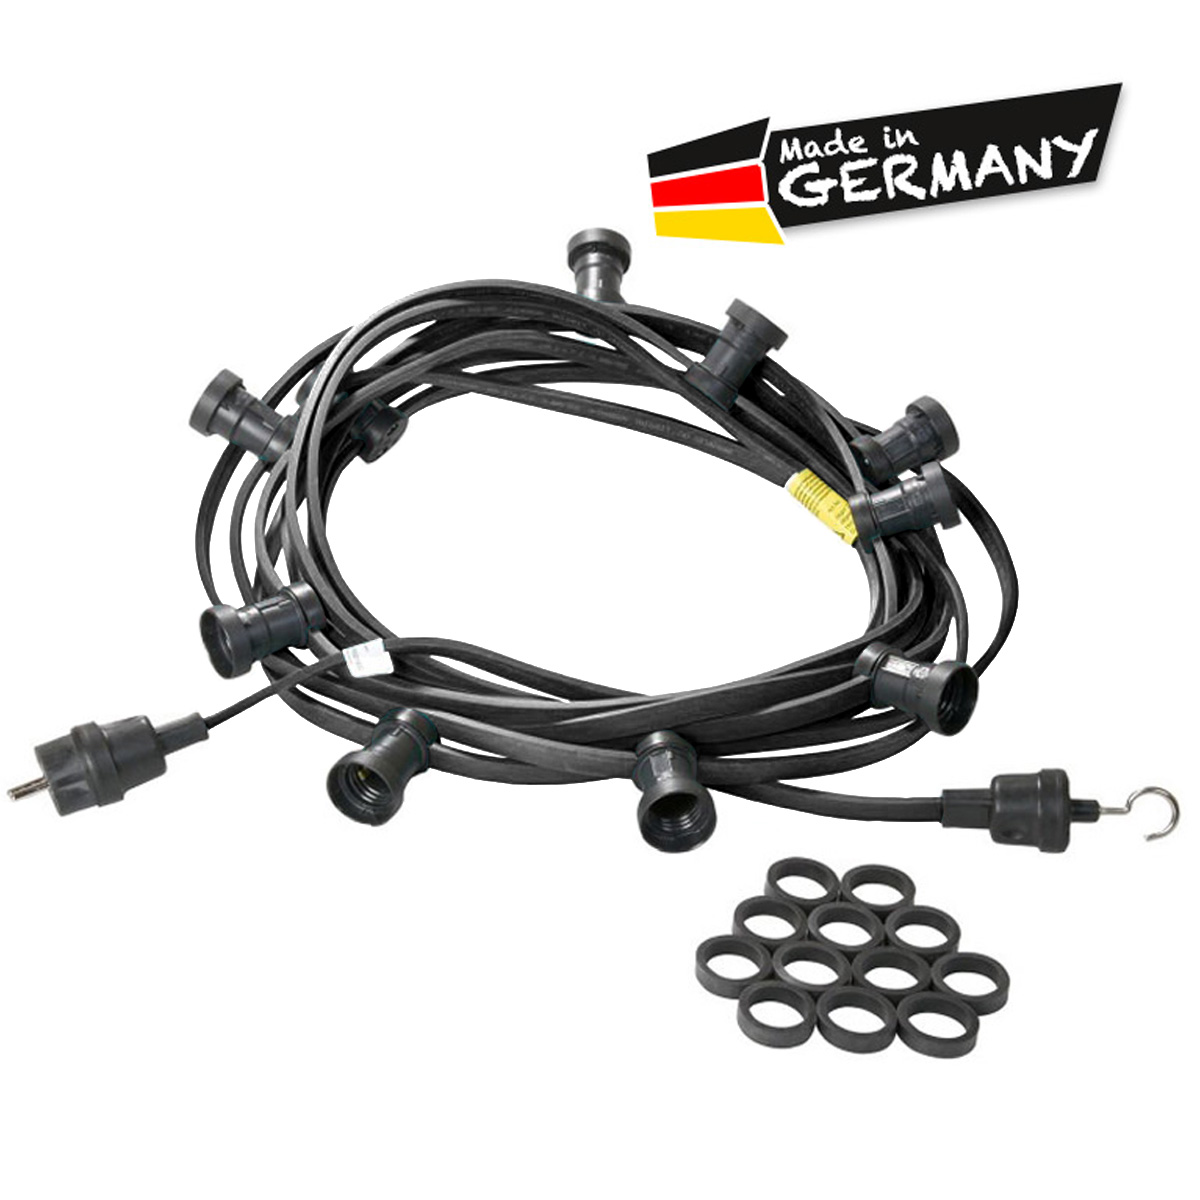 Illu-/Partylichterkette schwarz 20m | Außenlichterkette | Made in Germany | 20 x E27 Schraubfassung